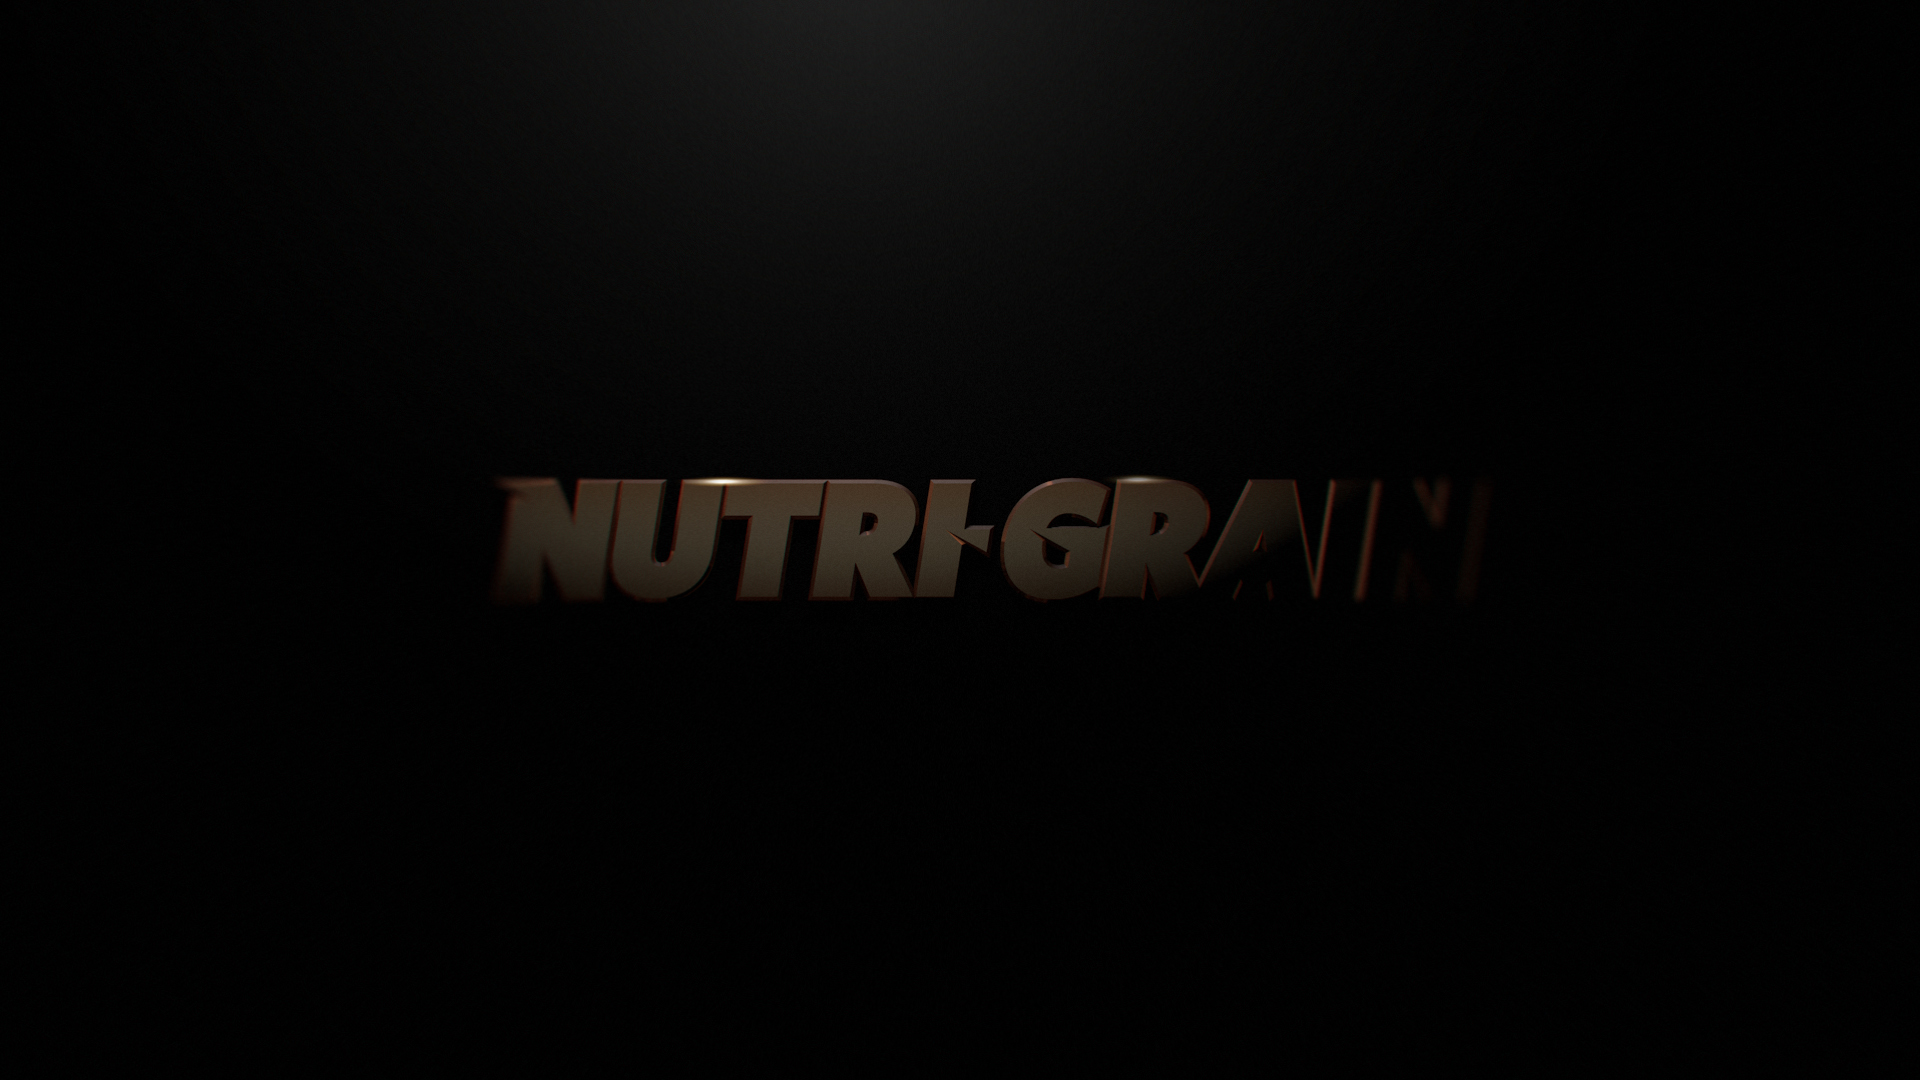 Nutrigrain_02_03.jpg